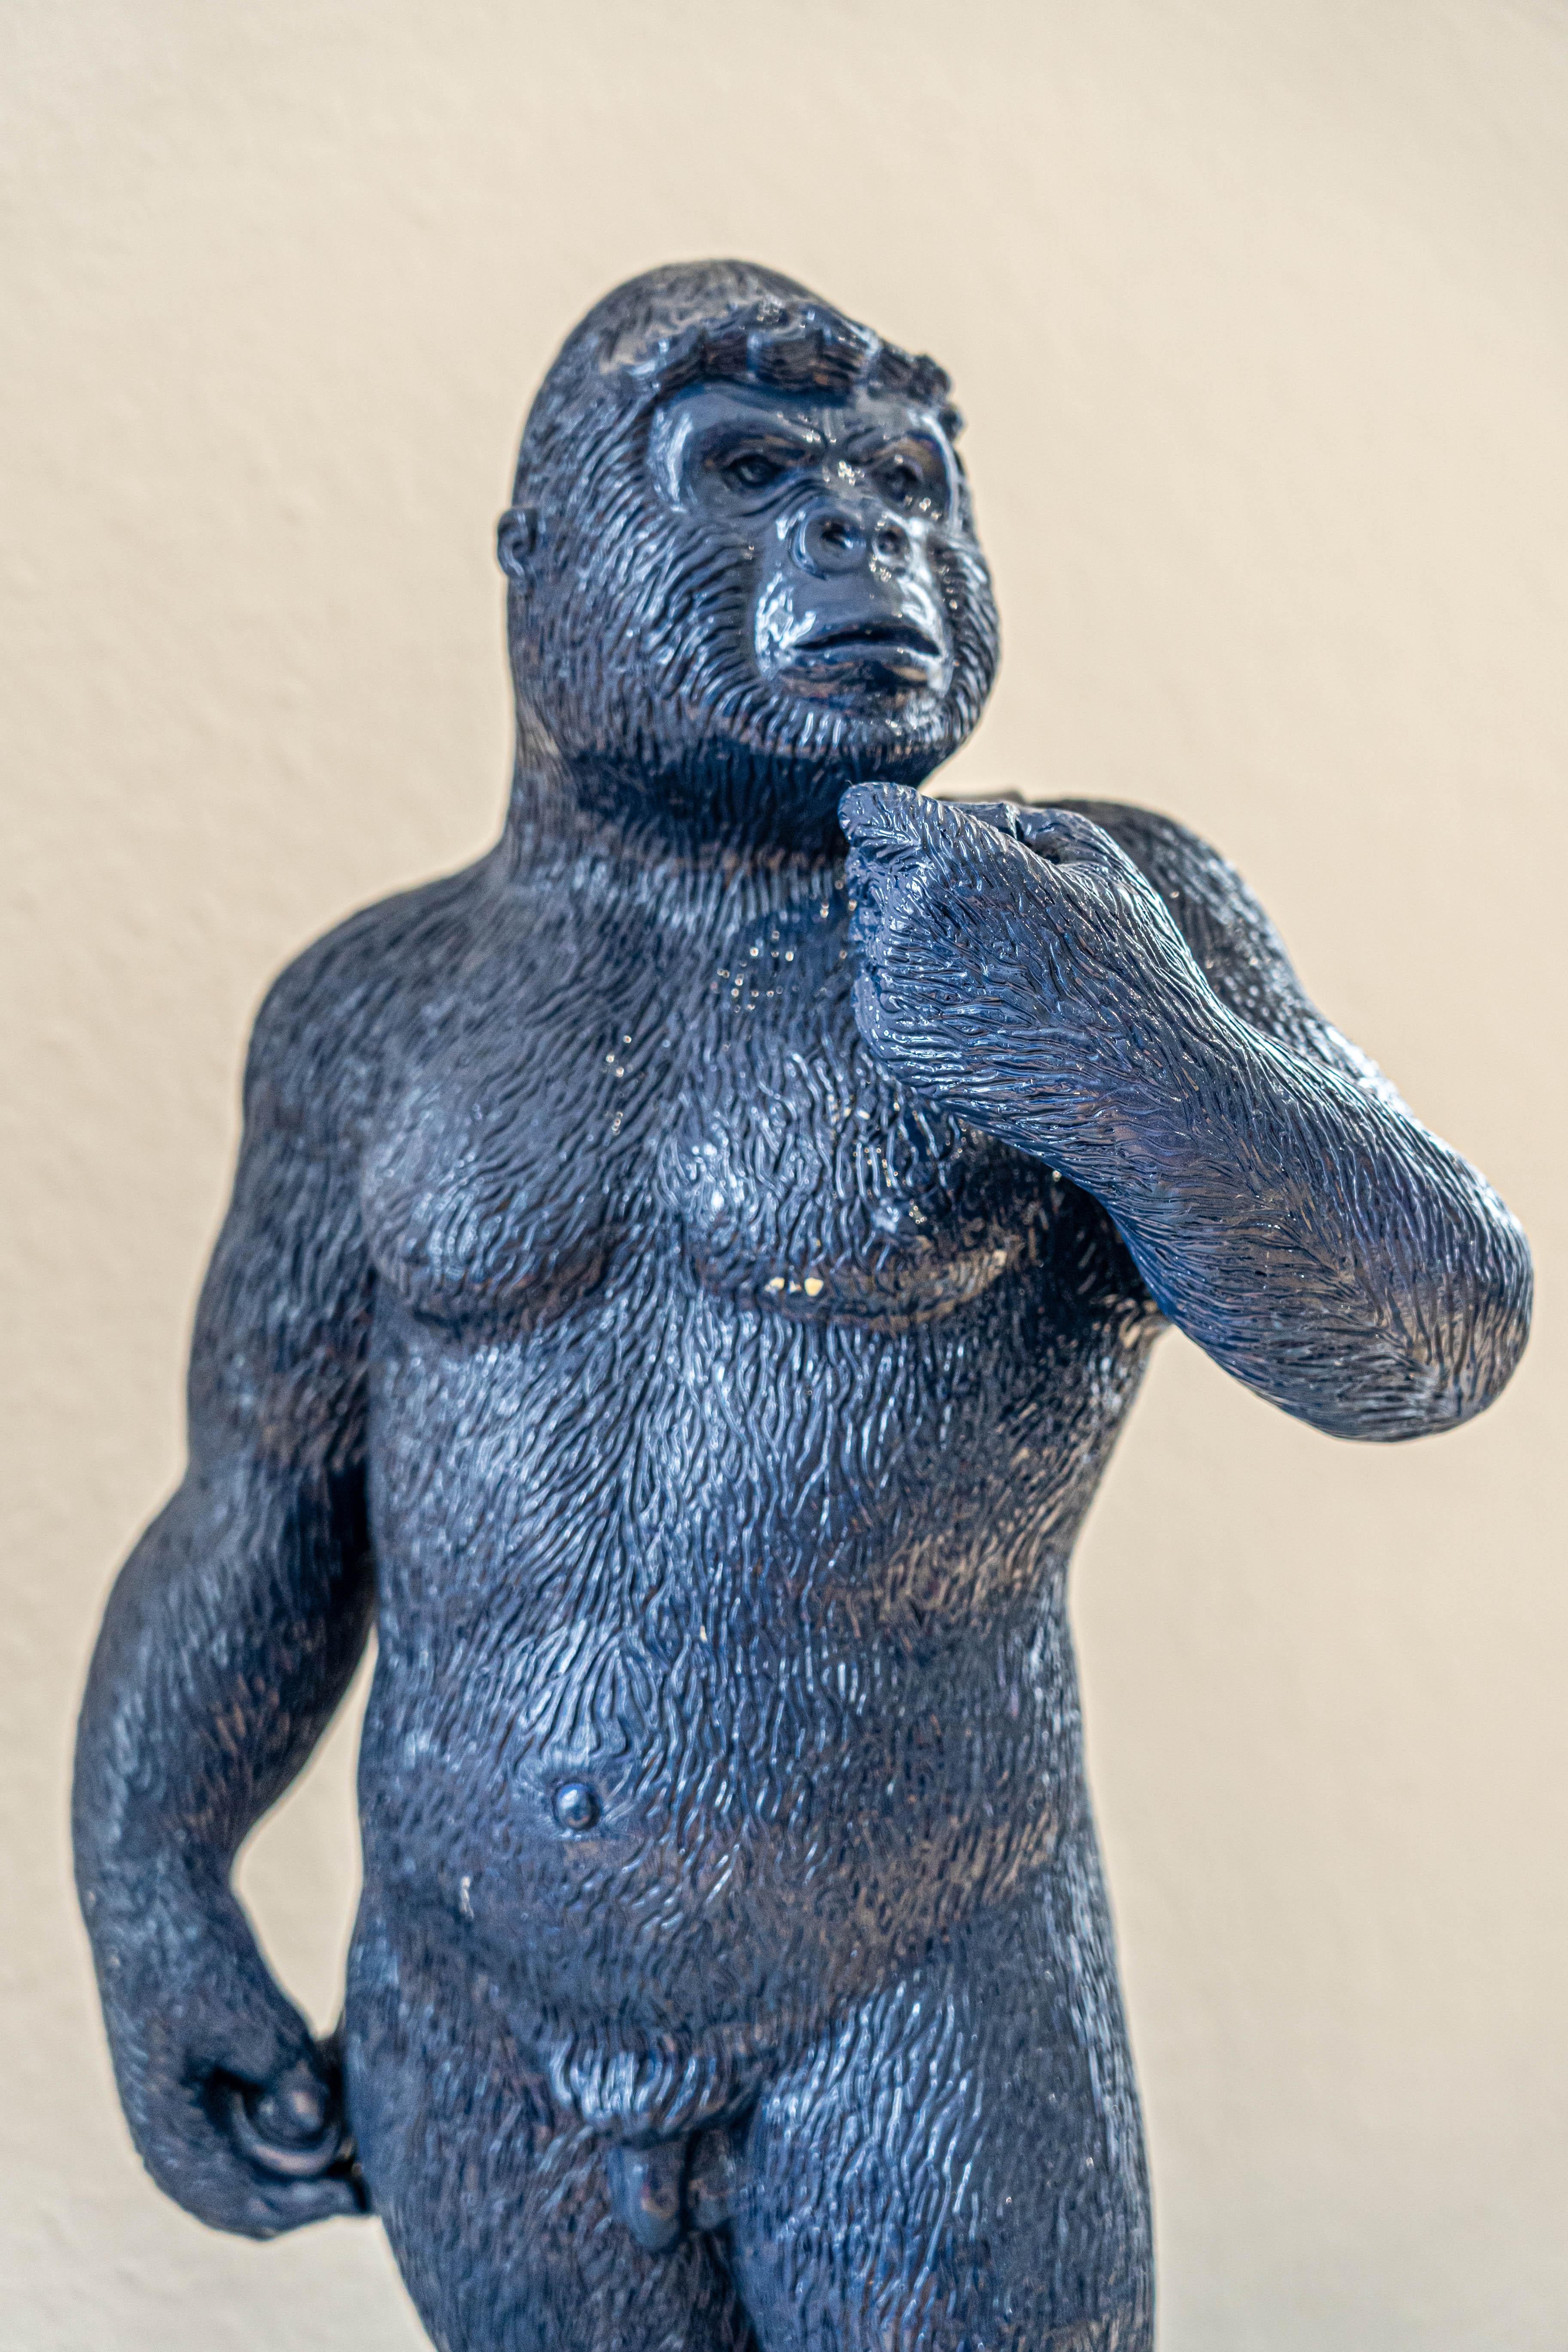 Bald! Dunkelblaue Gorilla-Skulptur in der Haltung des „David“ von Michelangelo – Sculpture von Patrick Schumacher